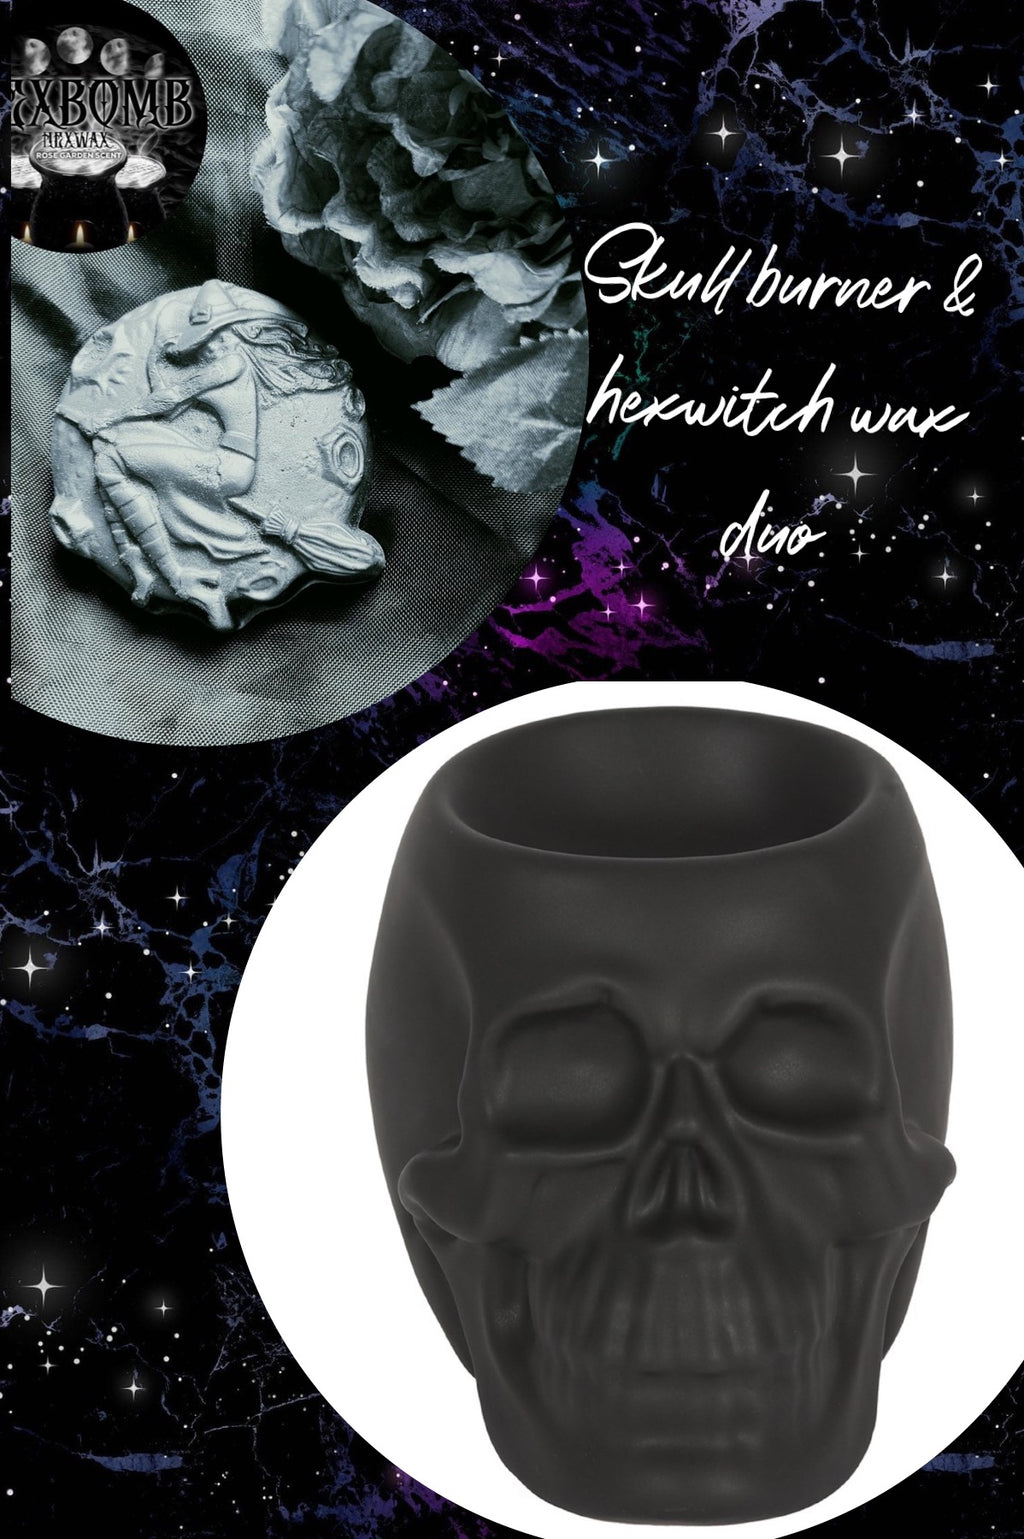 Ceramic skull & hexwax witch duo